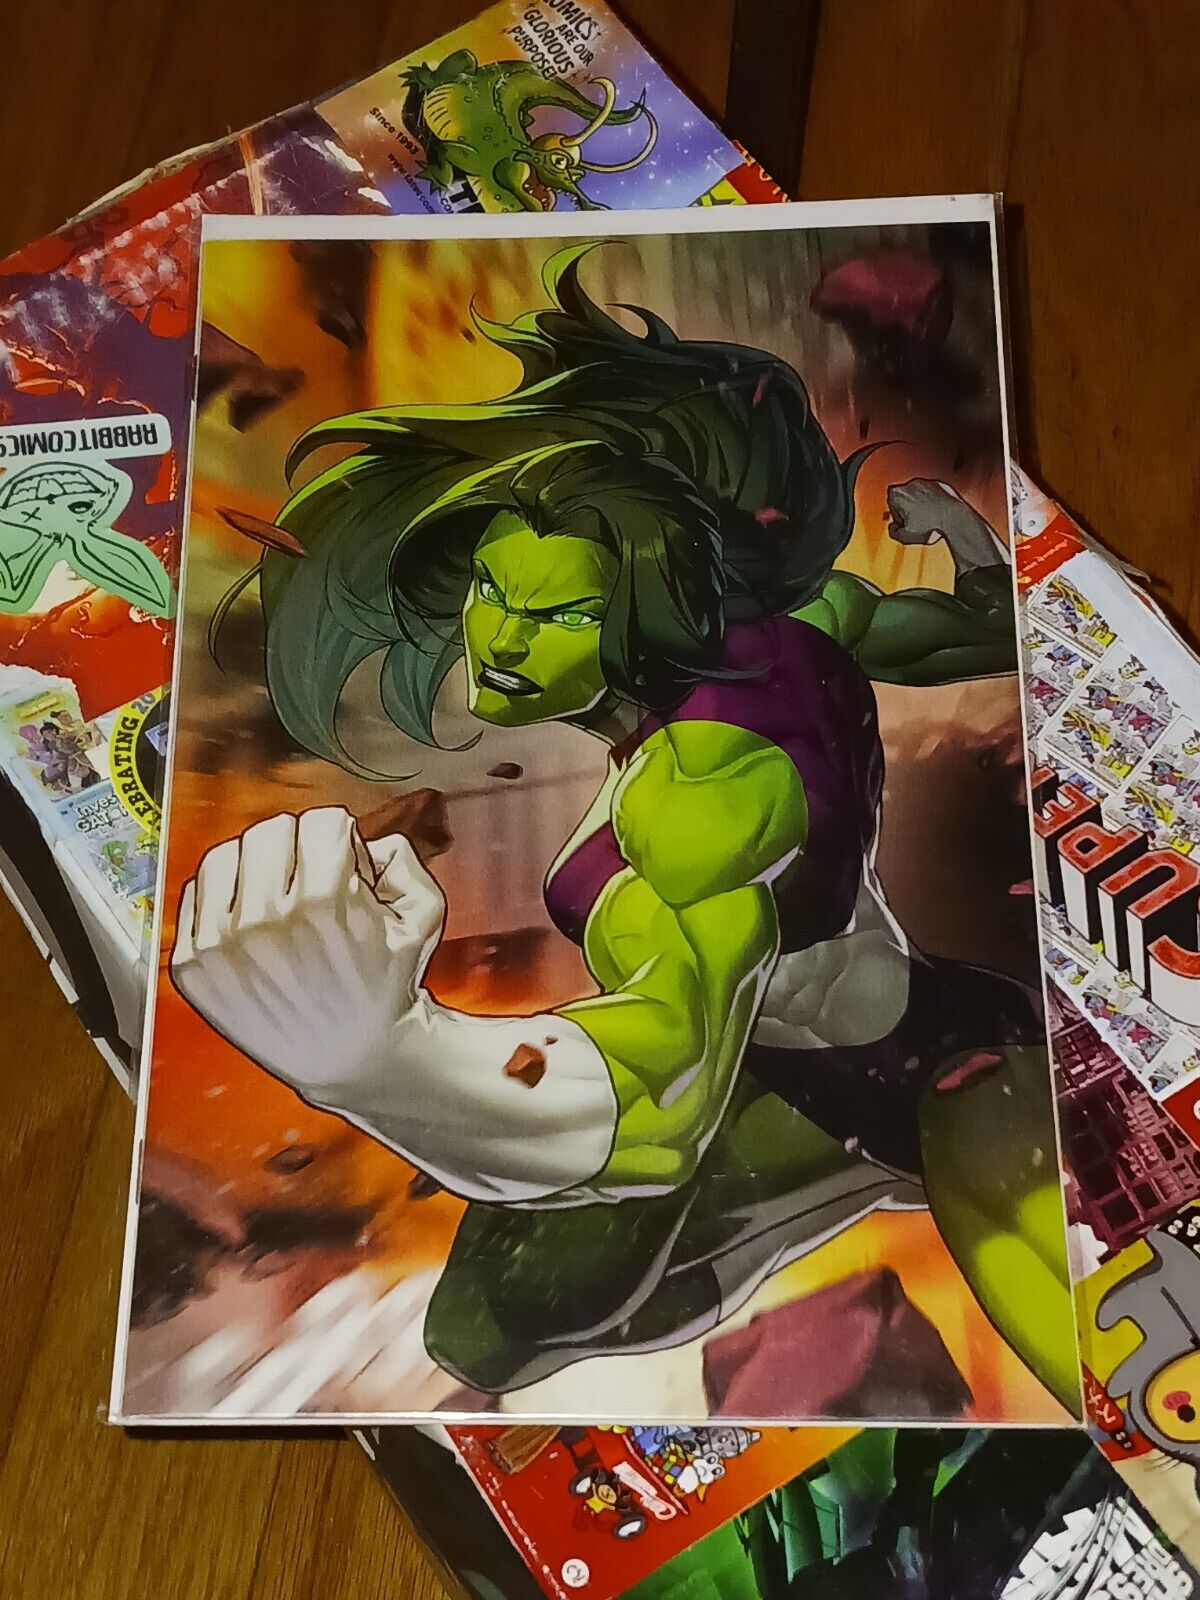 Fantastic Four # 3 (LGY #648) She-Hulk Battle Lines Virgin Variant Marvel 2019